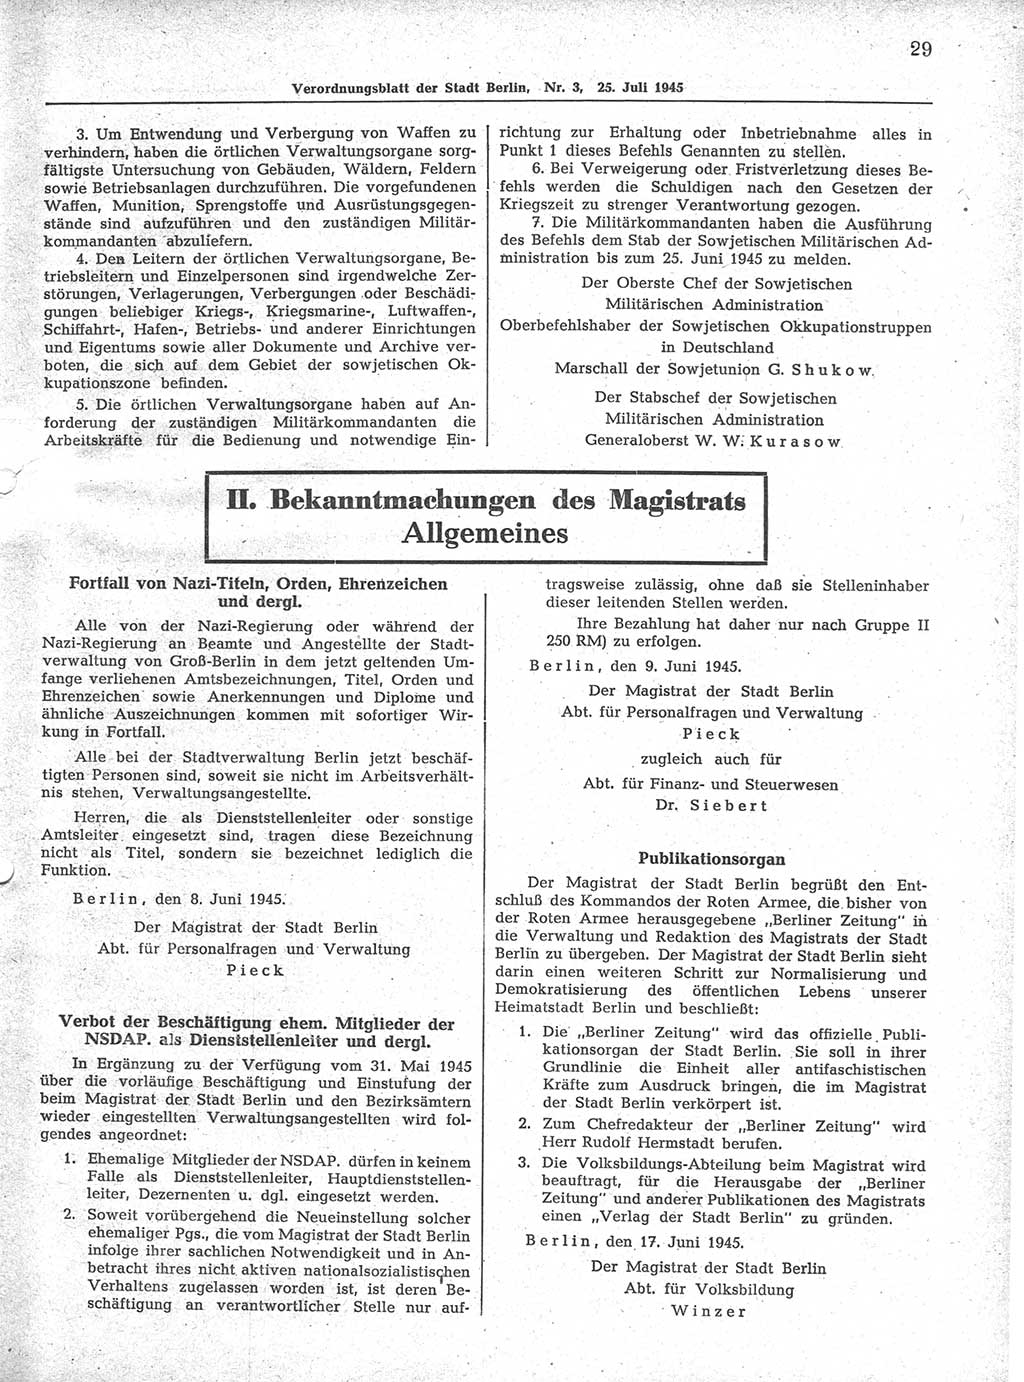 Verordnungsblatt (VOBl.) der Stadt Berlin 1945, Seite 29 (VOBl. Bln. 1945, S. 29)